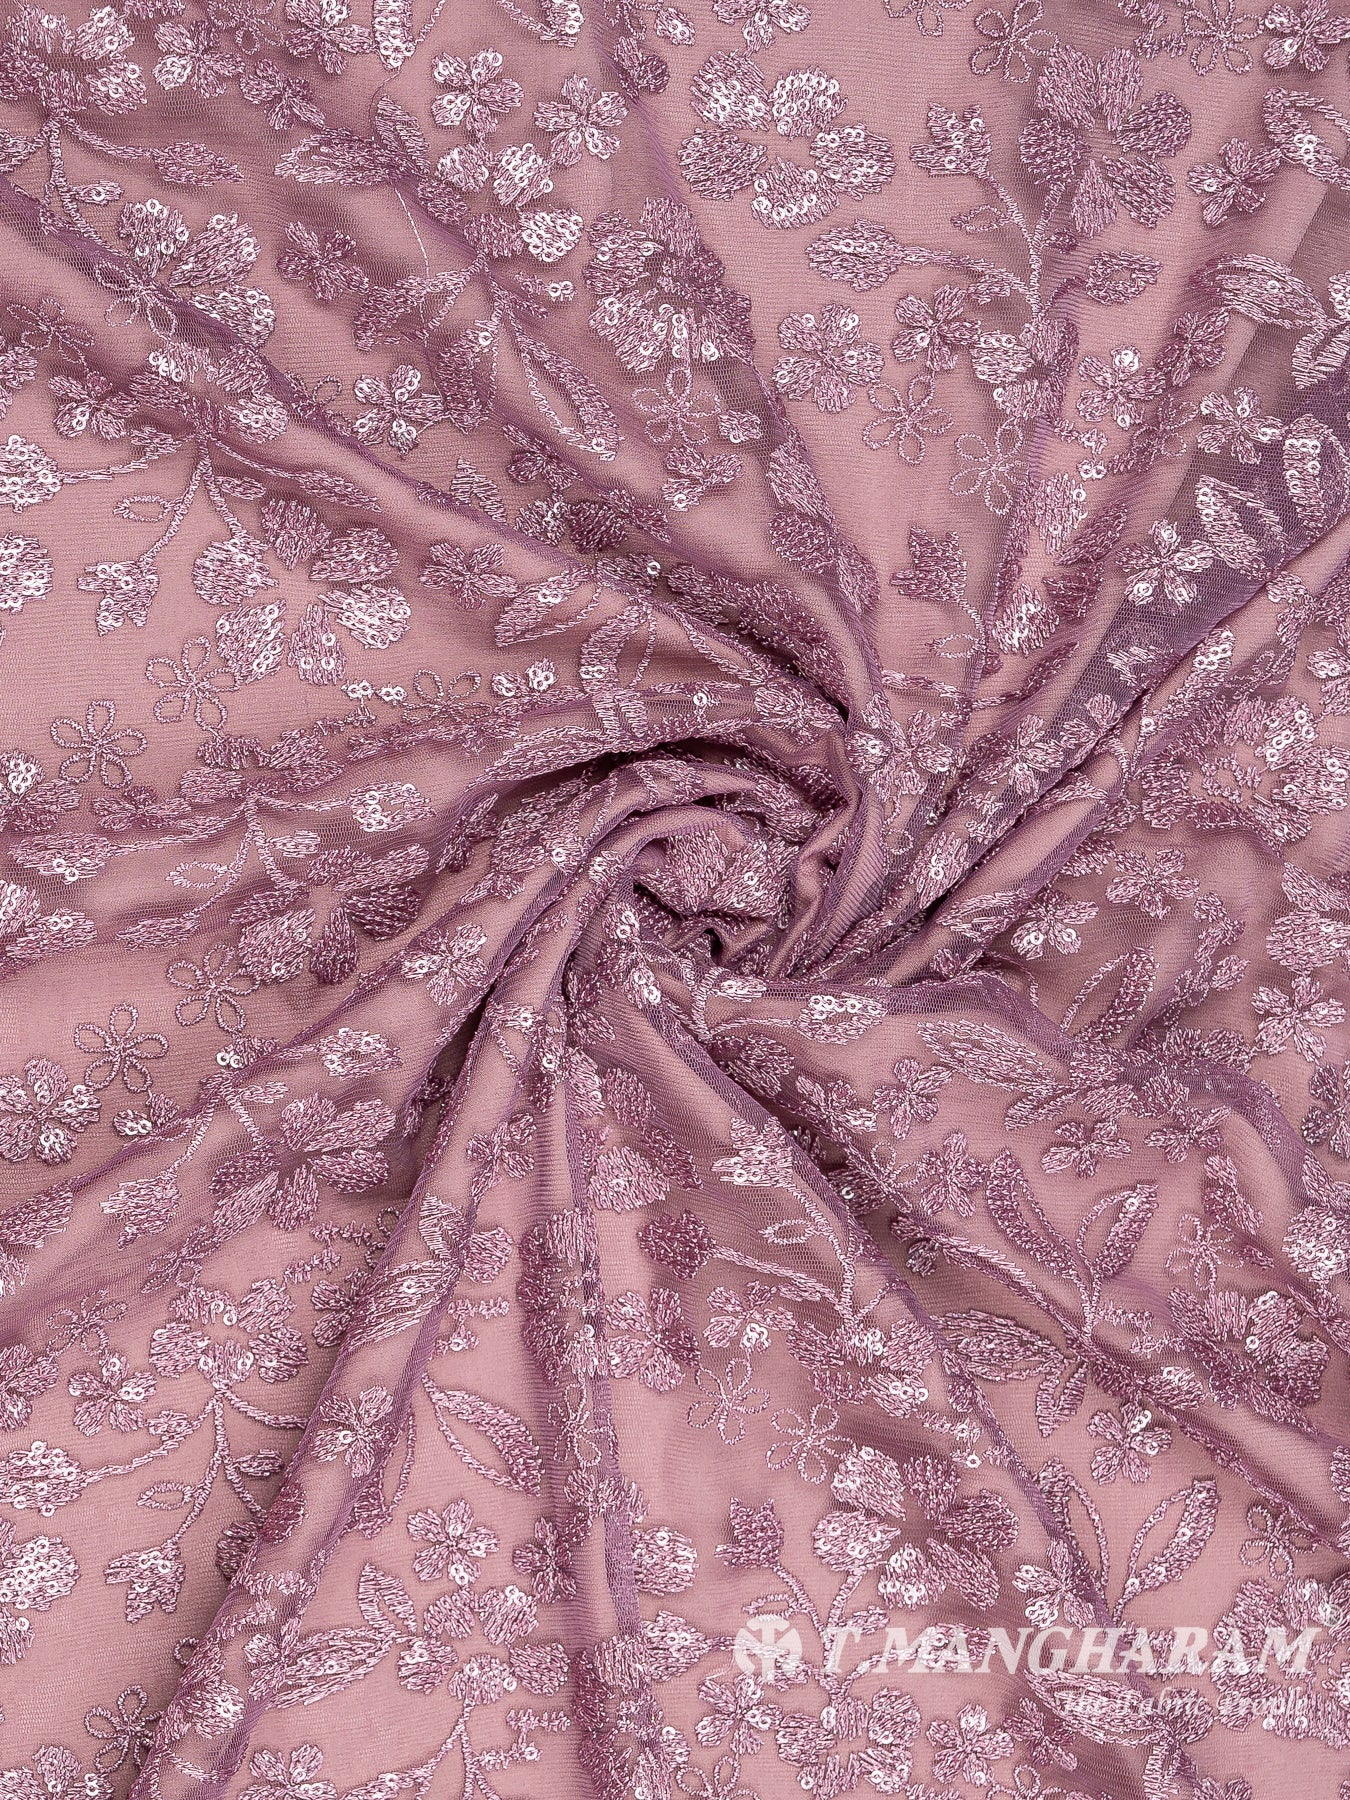 Violet Fancy Net Fabric - EC8104